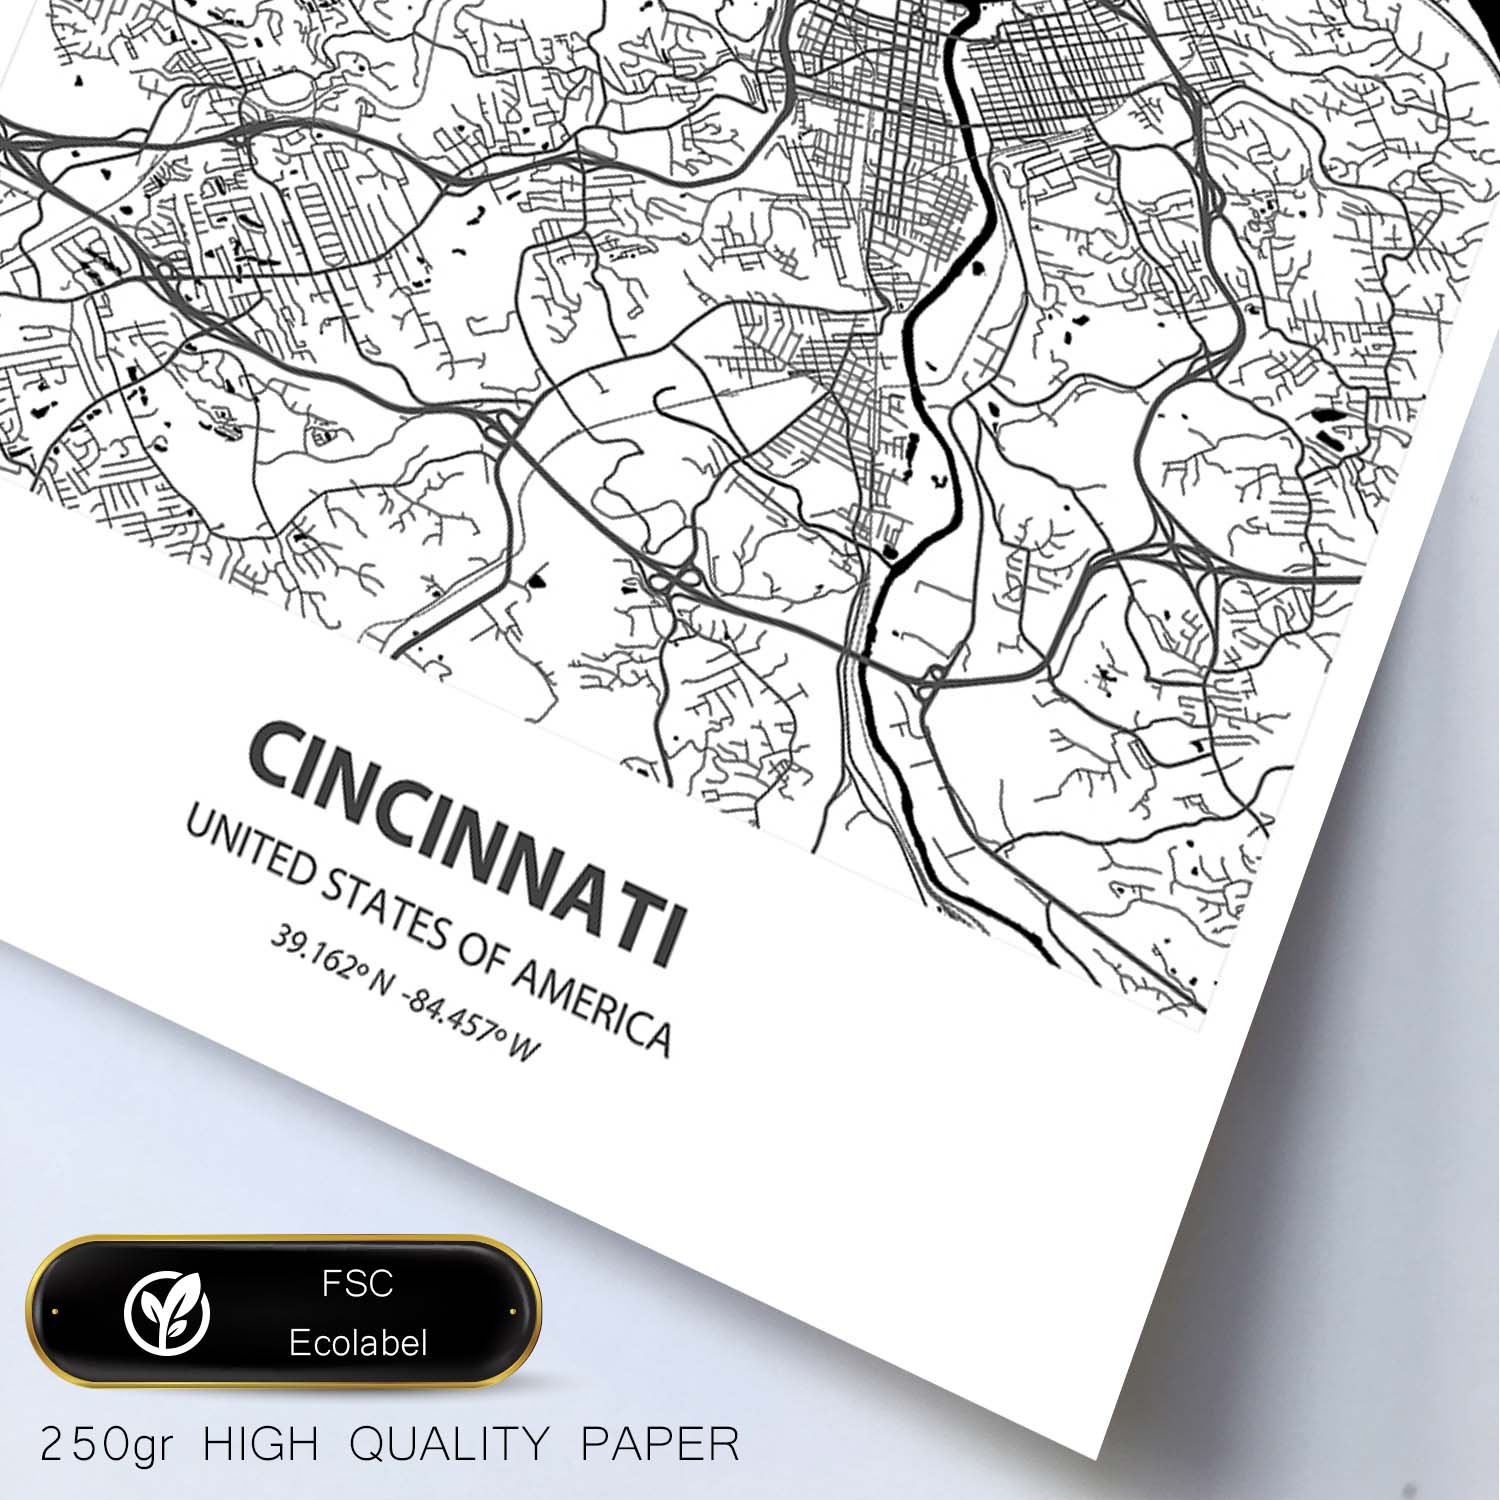 Poster con mapa de Cincinnati - USA. Láminas de ciudades de Estados Unidos con mares y ríos en color negro.-Artwork-Nacnic-Nacnic Estudio SL